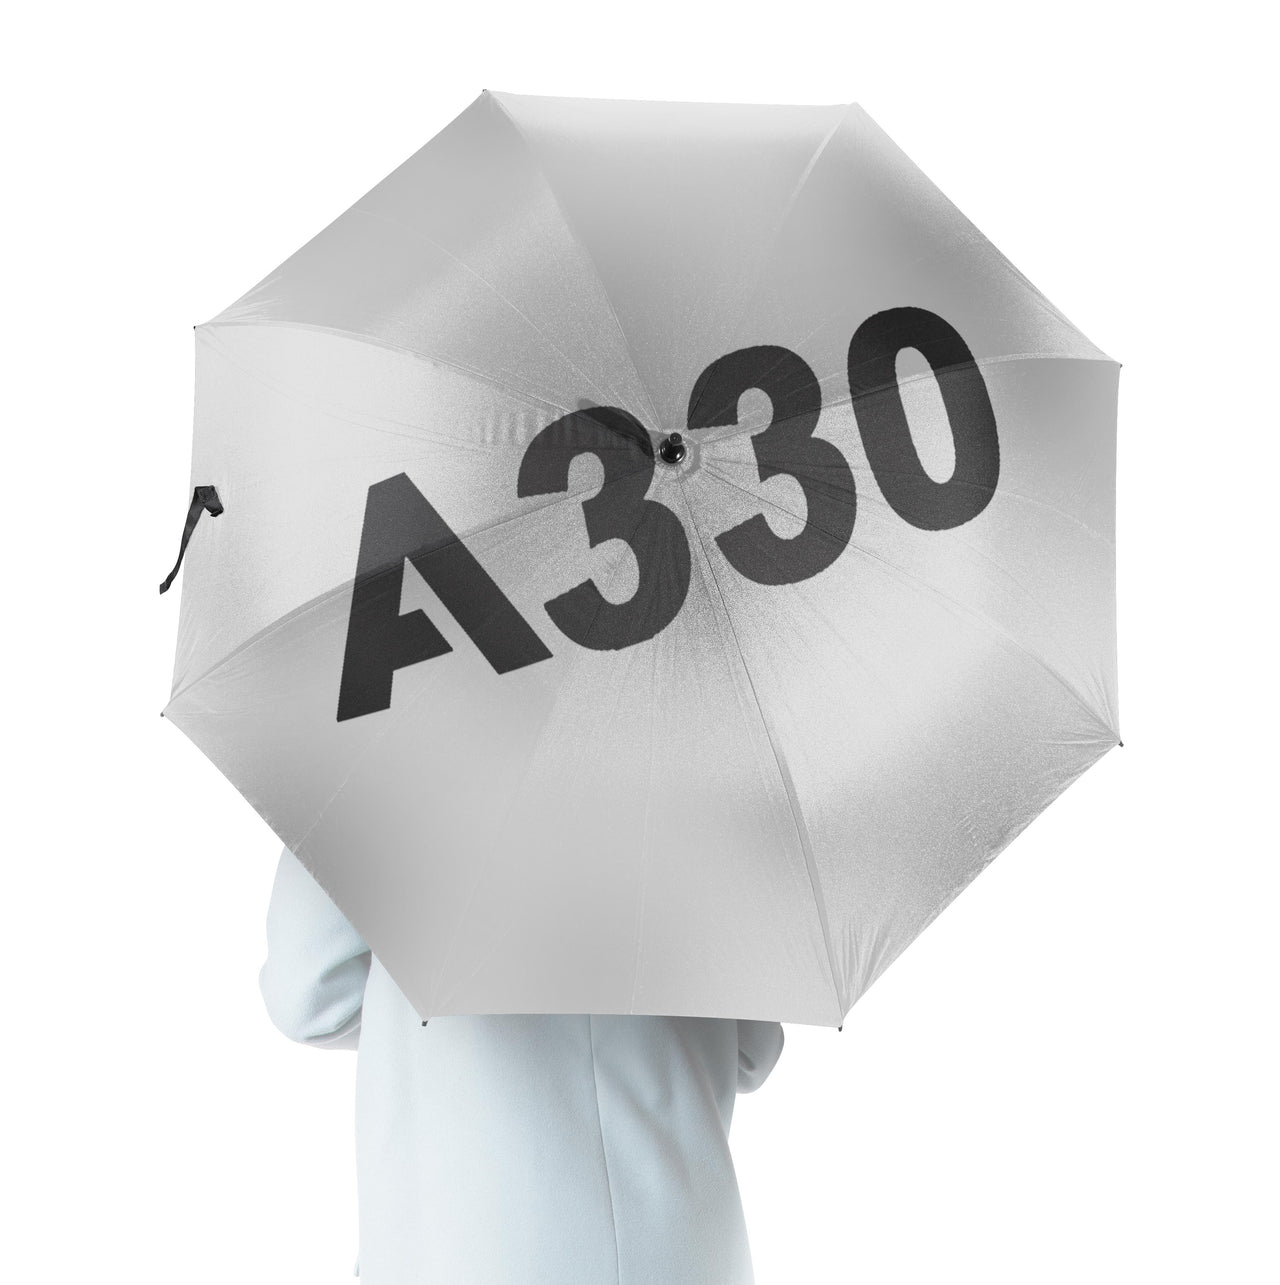 A330 Flat Text Designed Umbrella